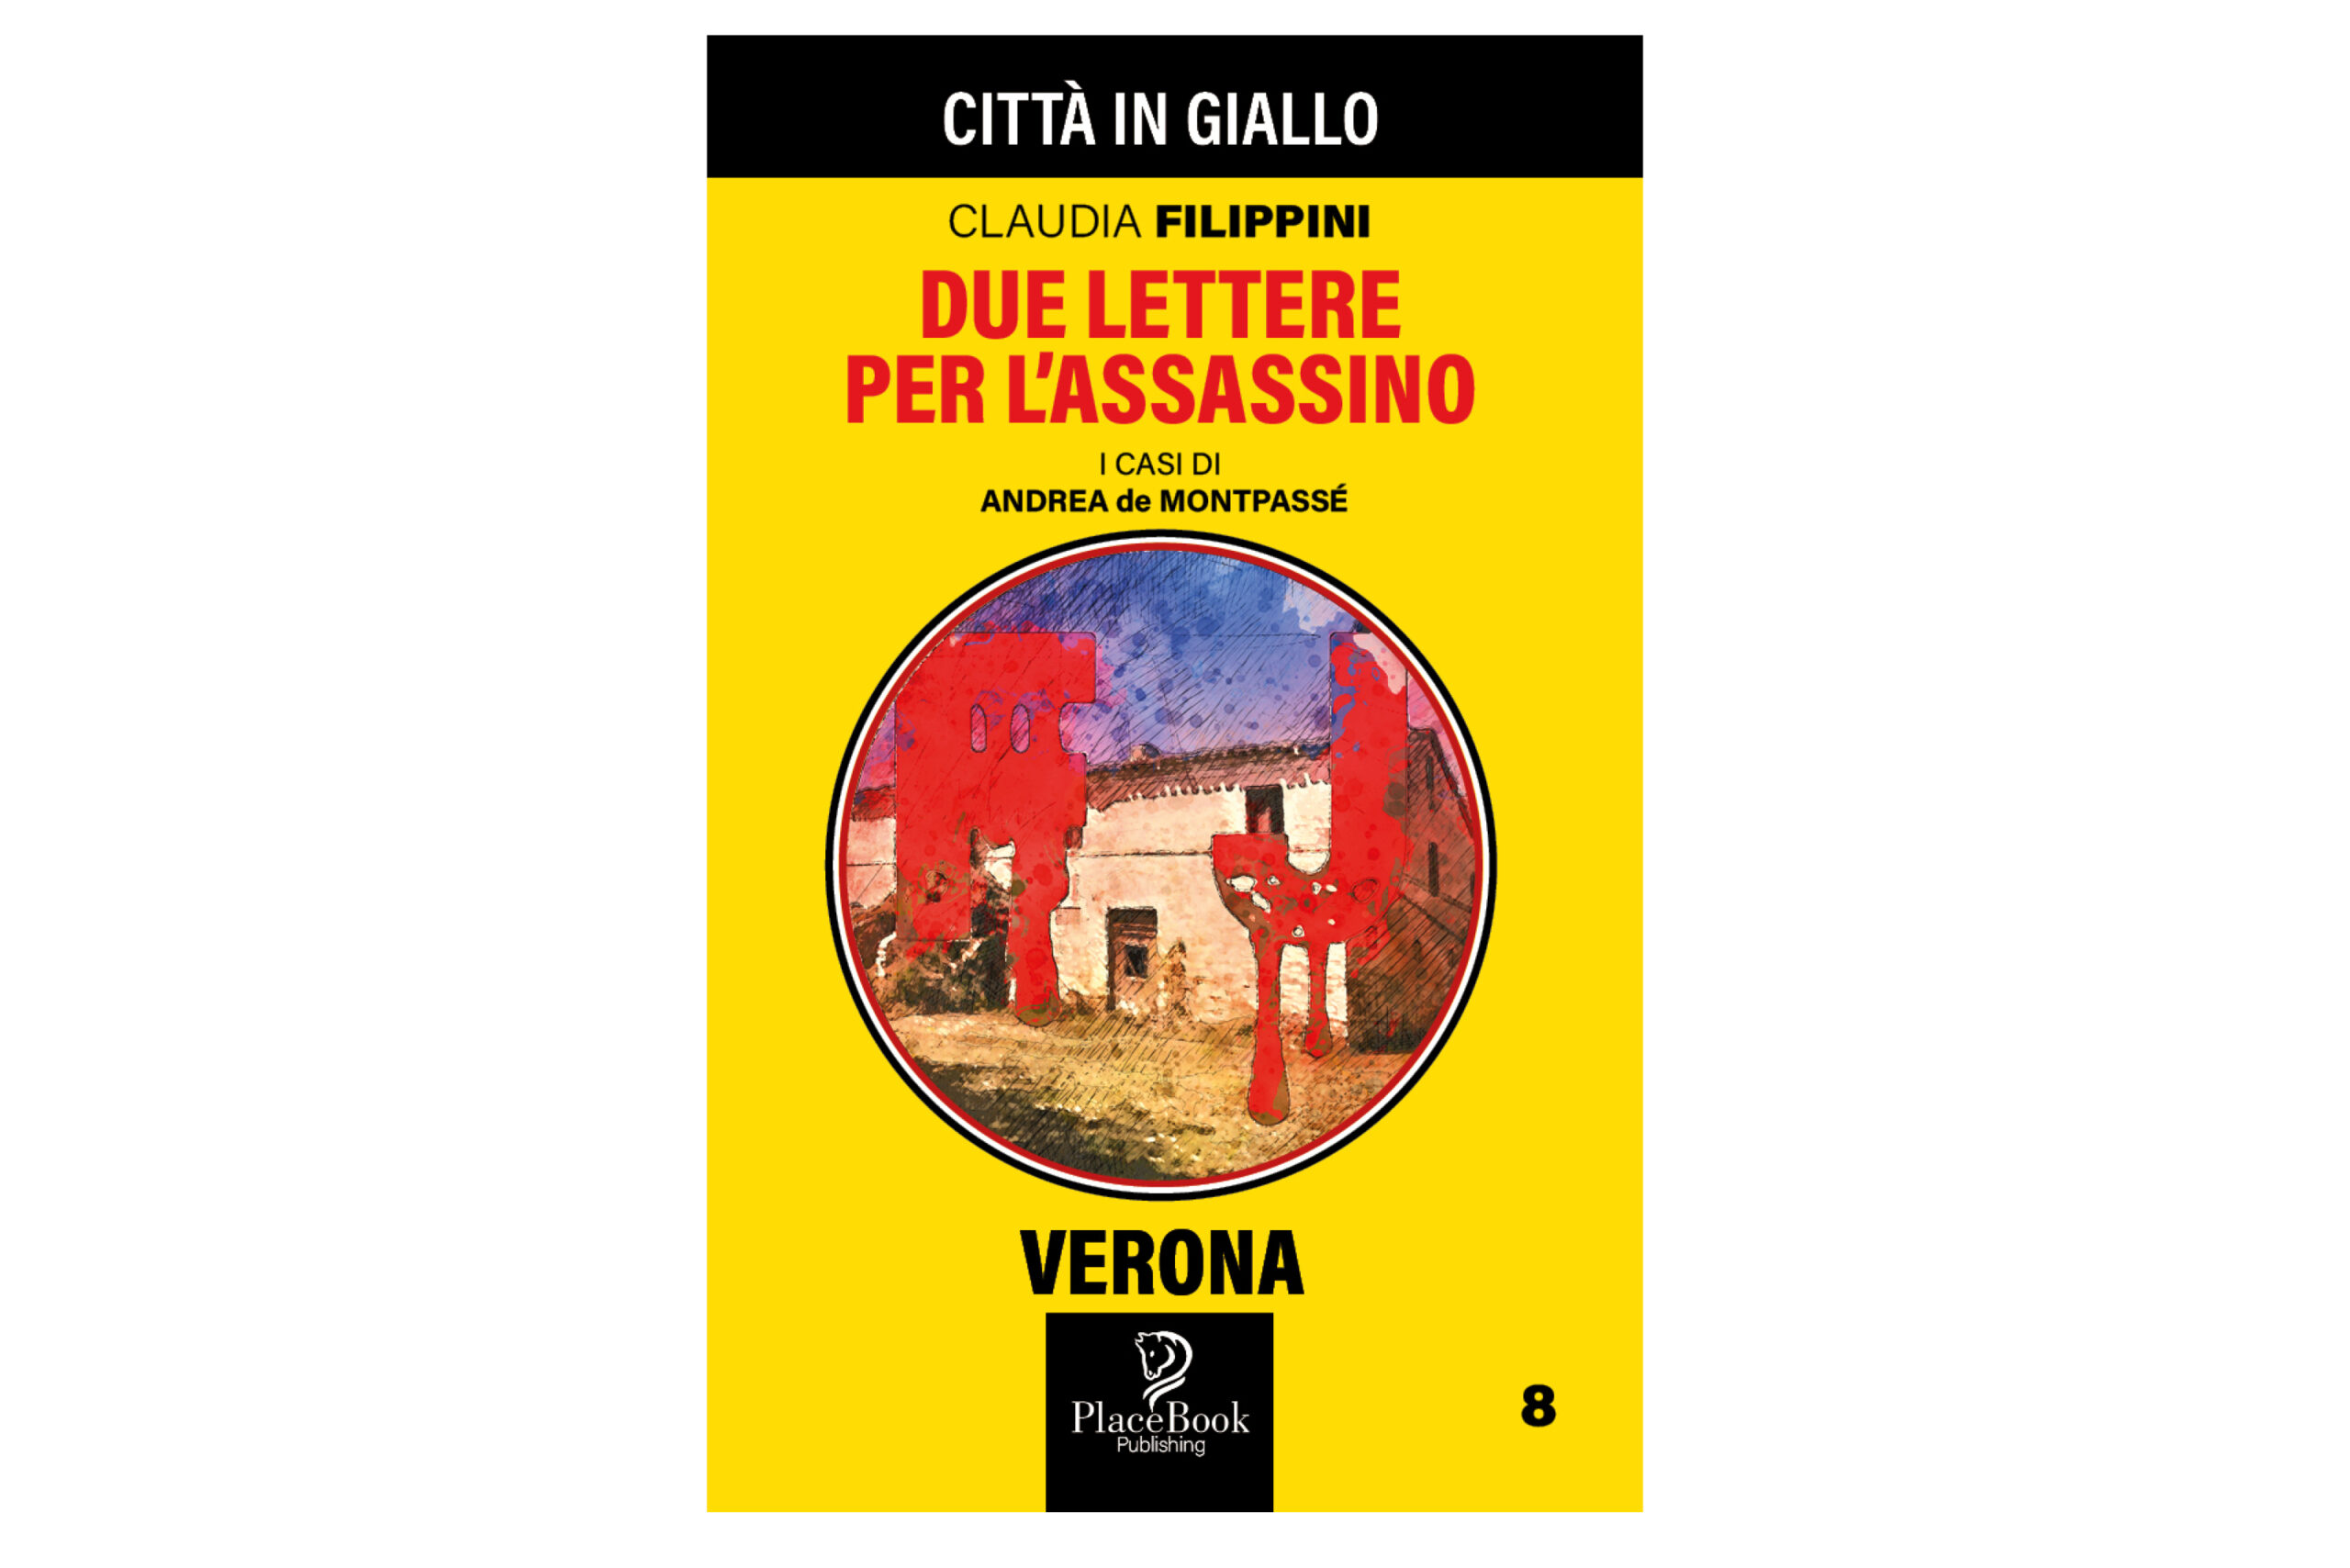 Due lettere per l’assassino – Verona 8